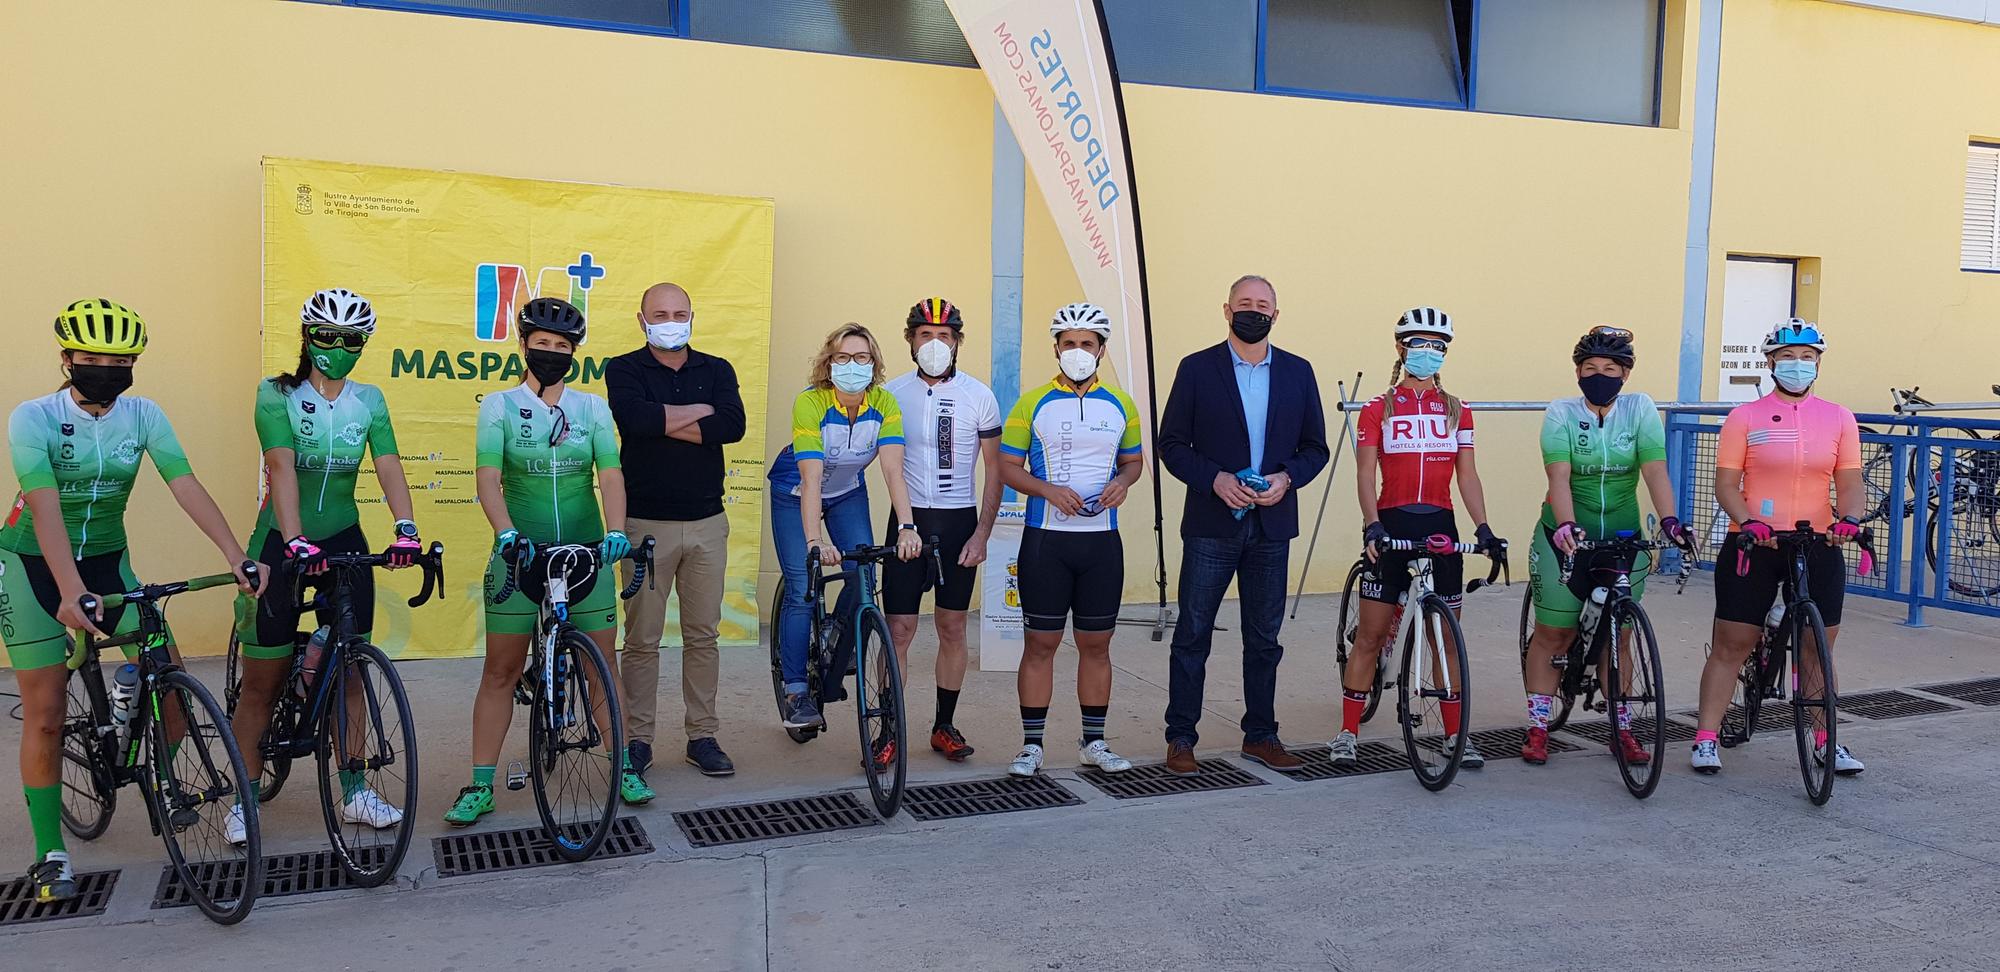 Perico Delgado pedalea con los ciclistas locales de Gran Canaria